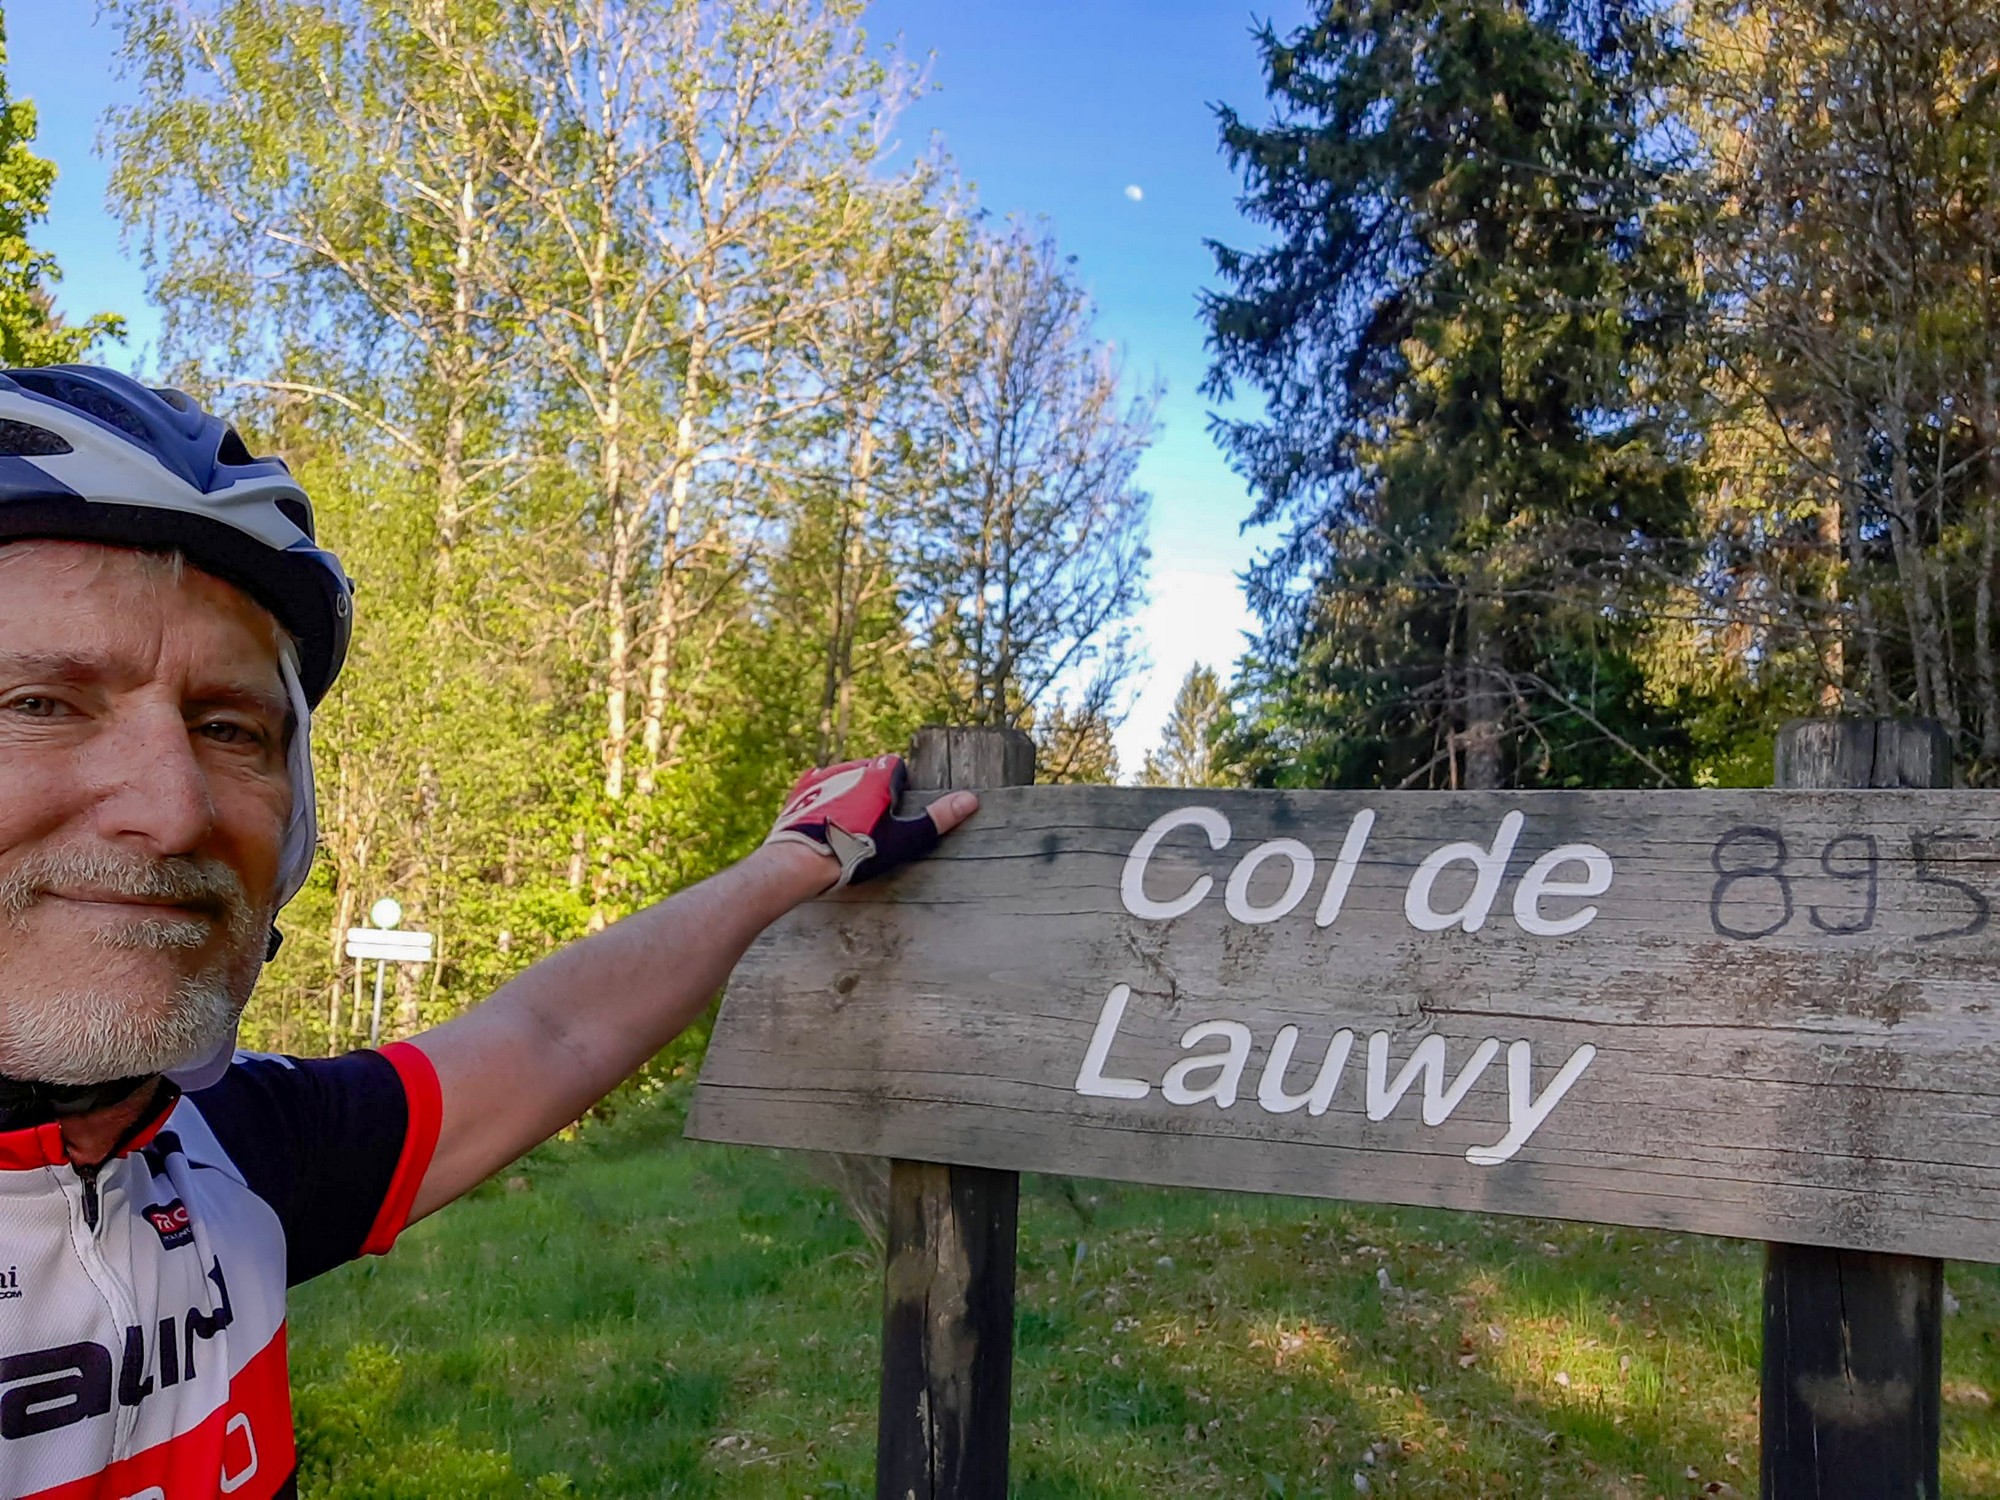 Col de Lauwy